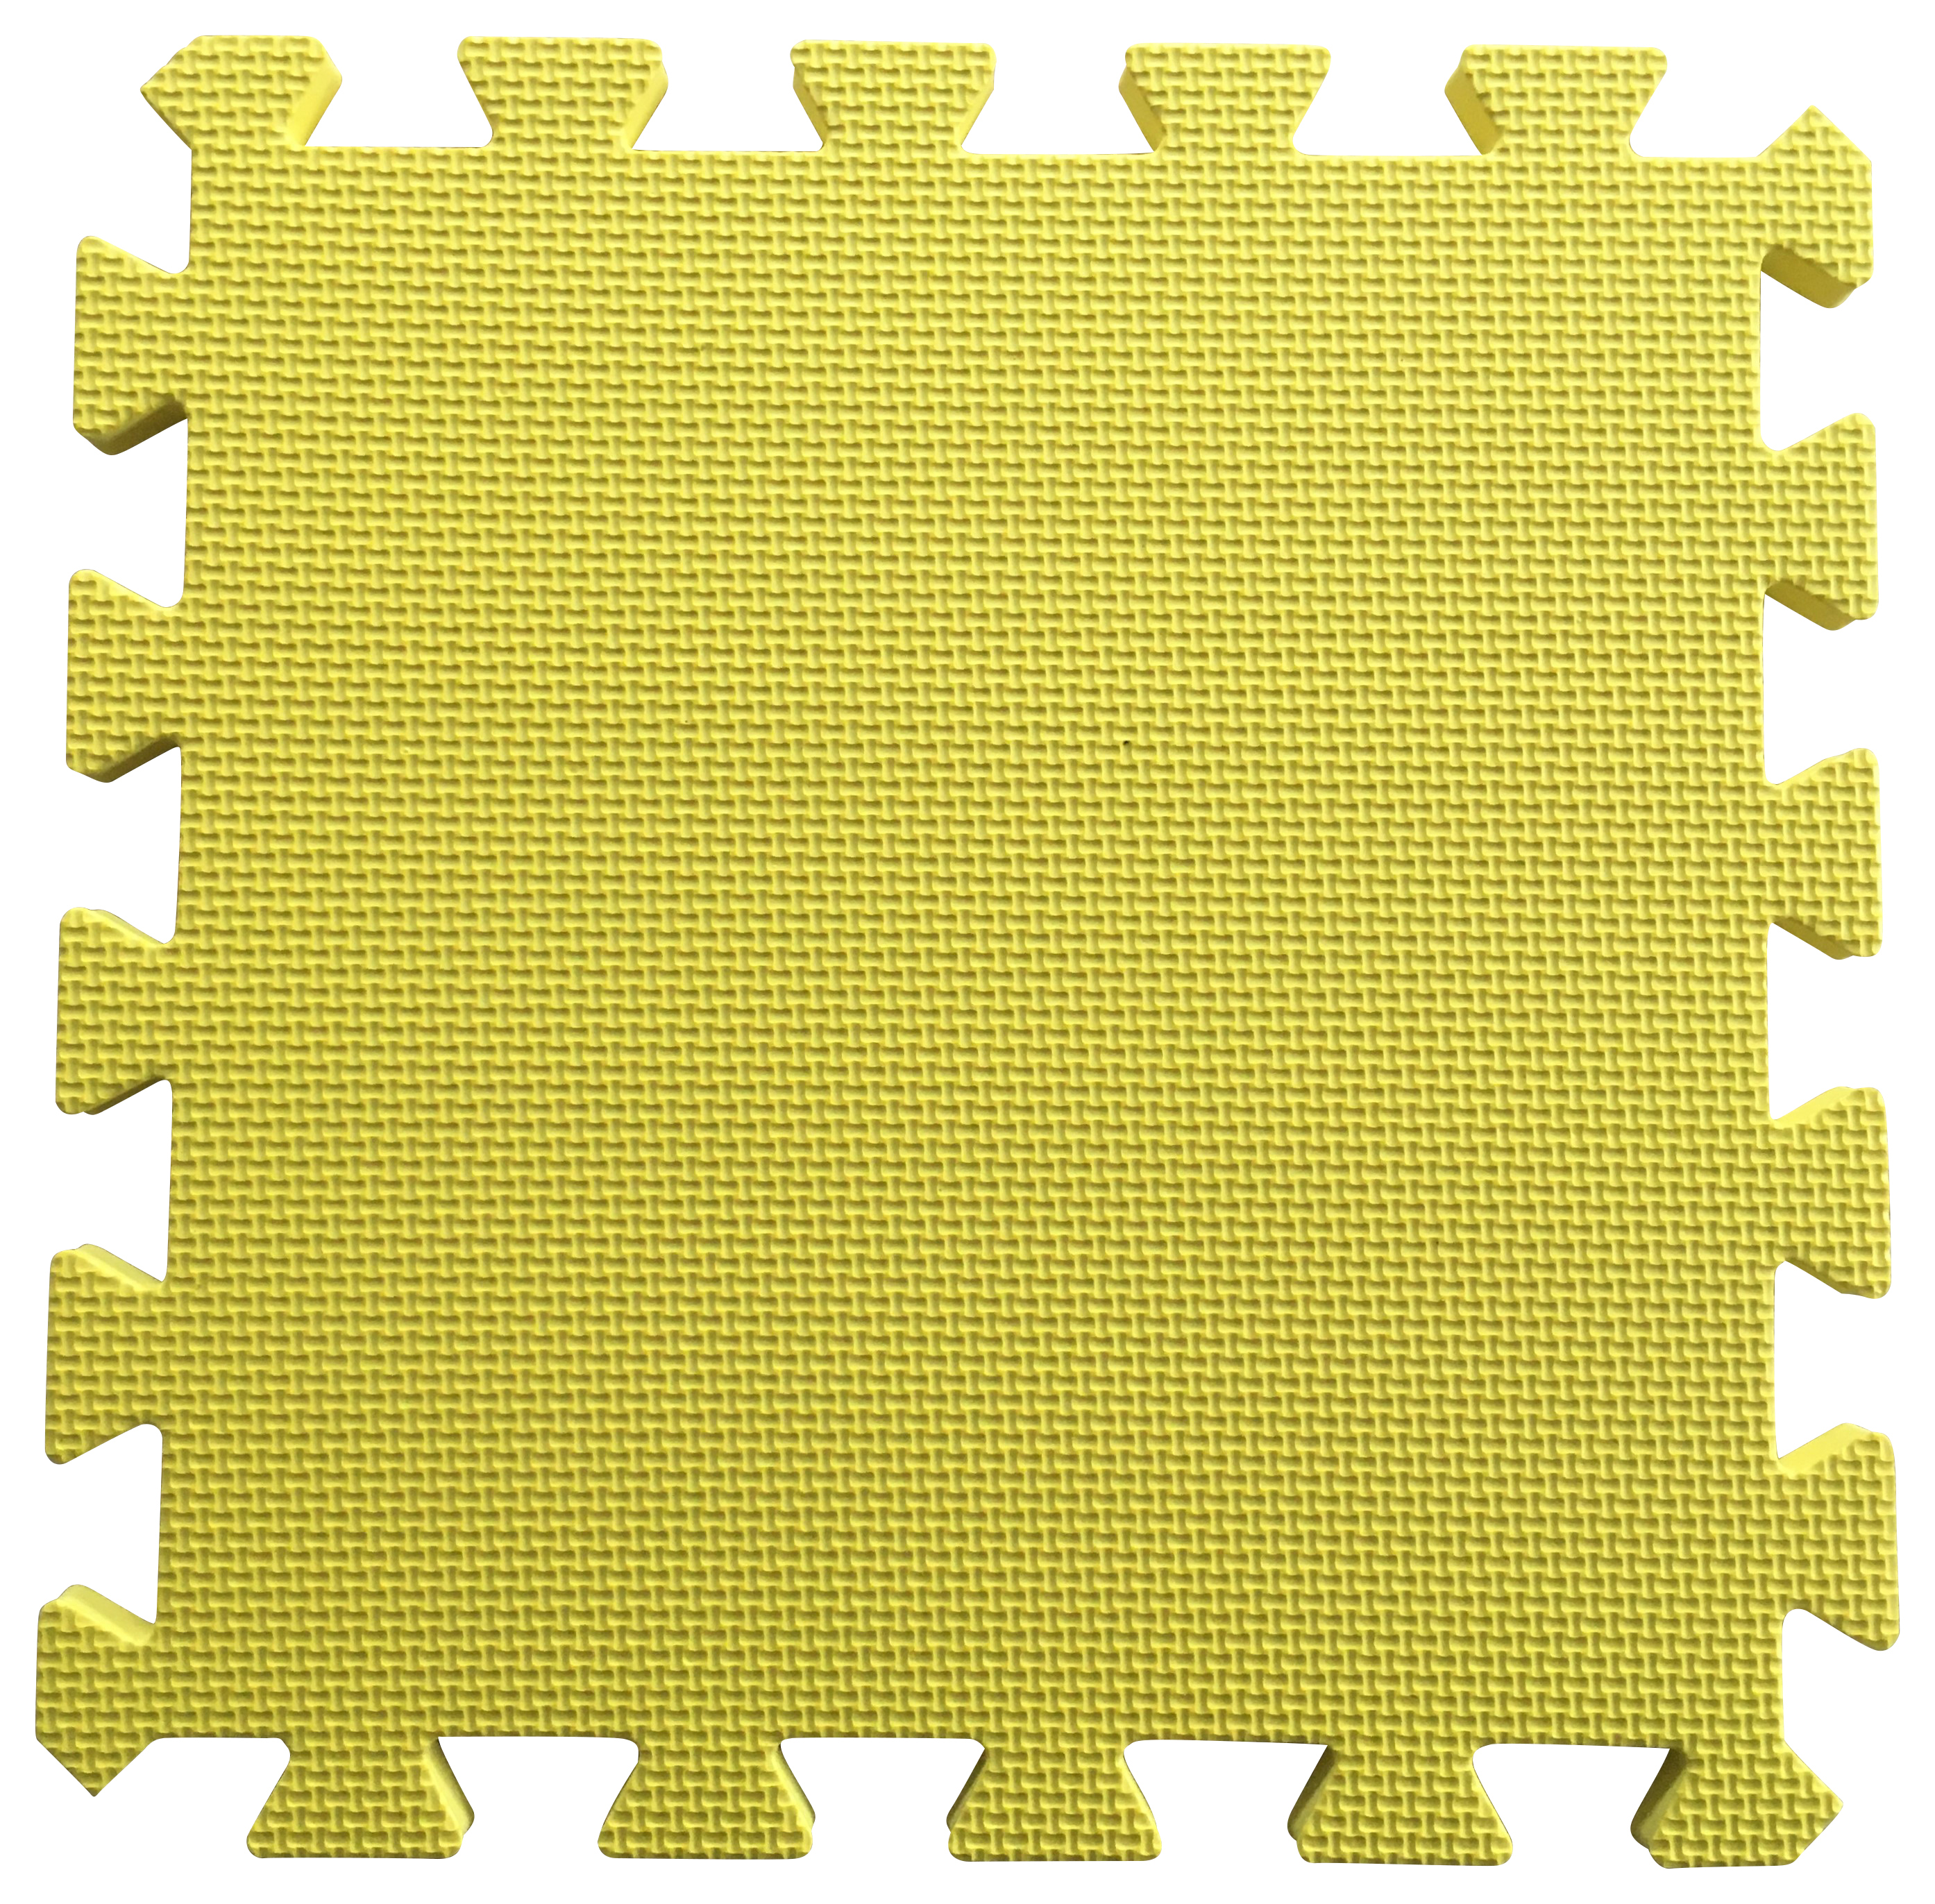 Warm Floor Yellow Interlocking Floor Tiles for Garden Buildings - 5 x 5ft